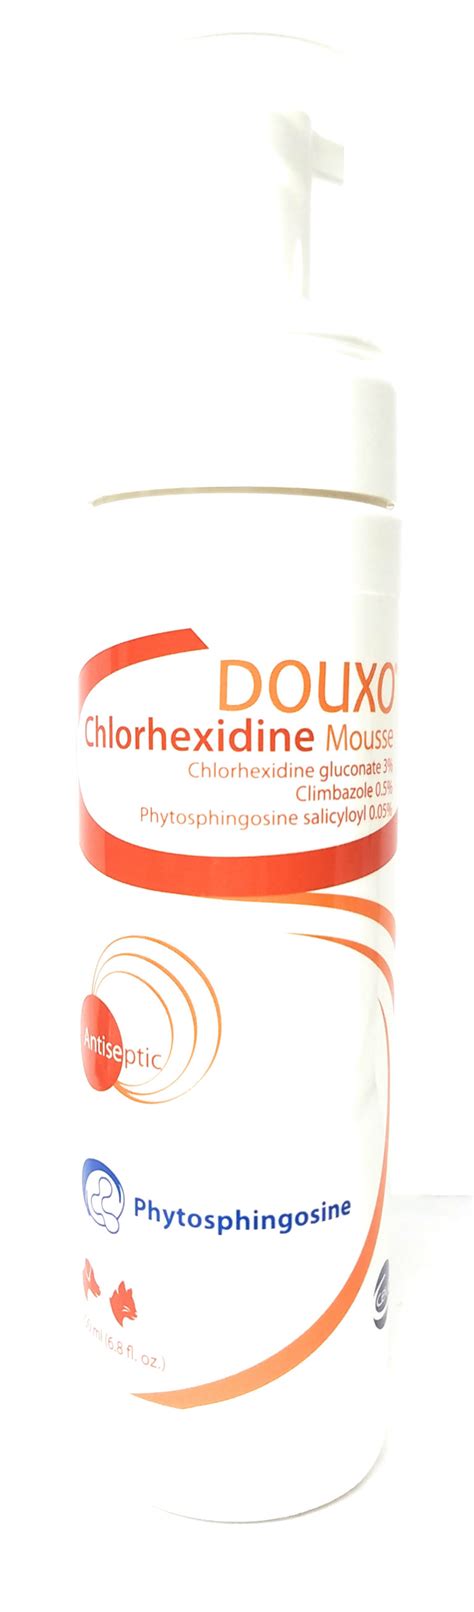 Vet Approved Rx Douxo Chlorhexidine Ps Plus Climbazole Mousse 200 Ml